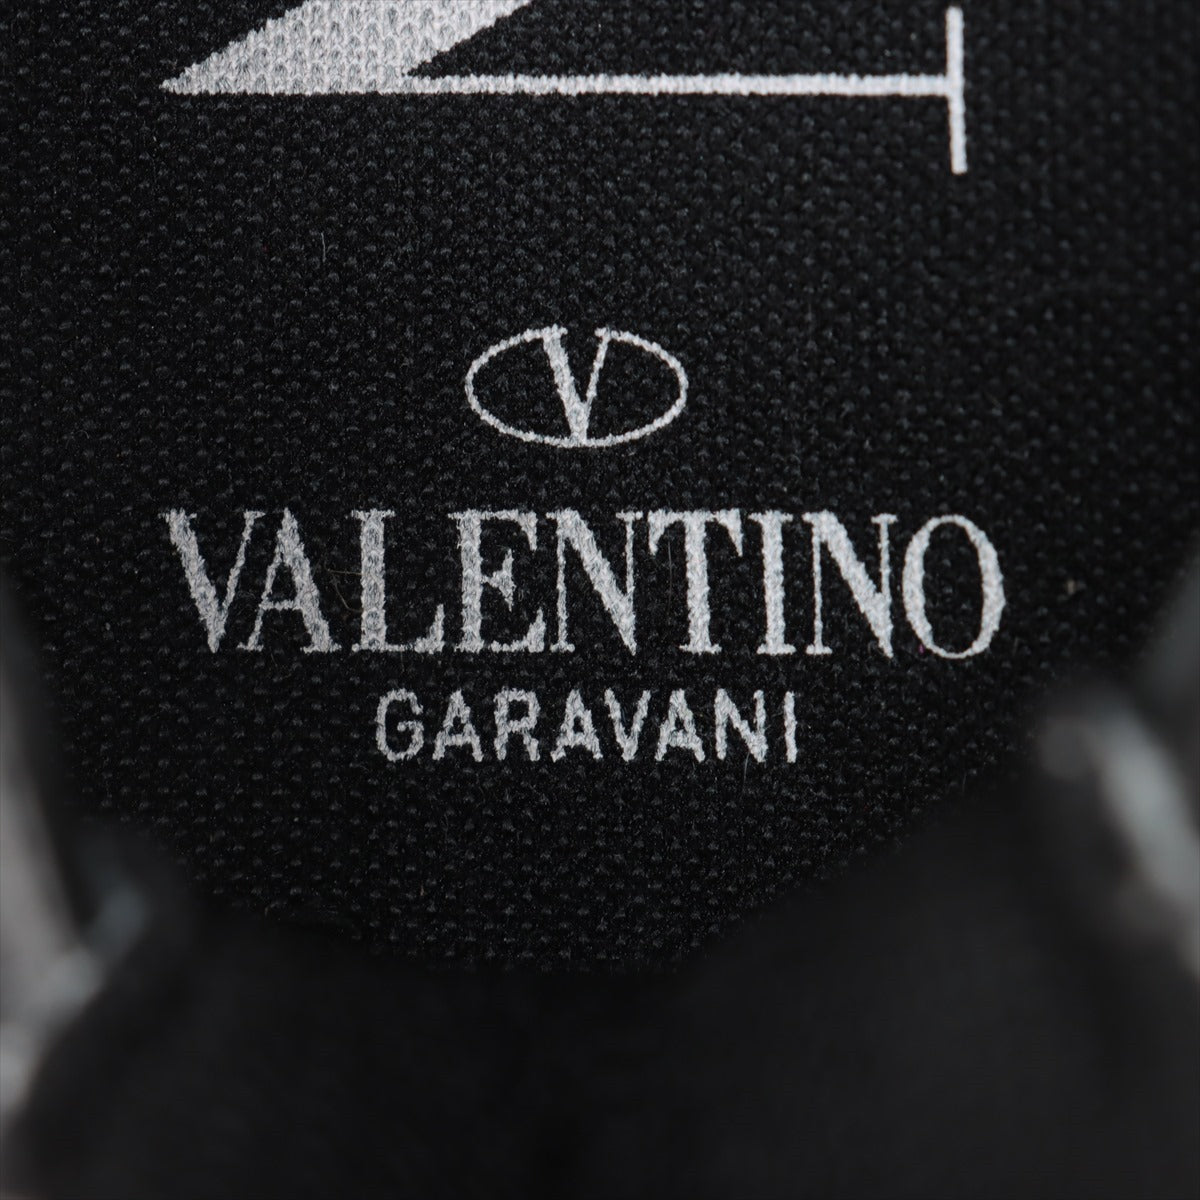 ヴァレンティノガラヴァーニ レザー×ファブリック スニーカー 41 メンズ グレー シュータン裏文字消え